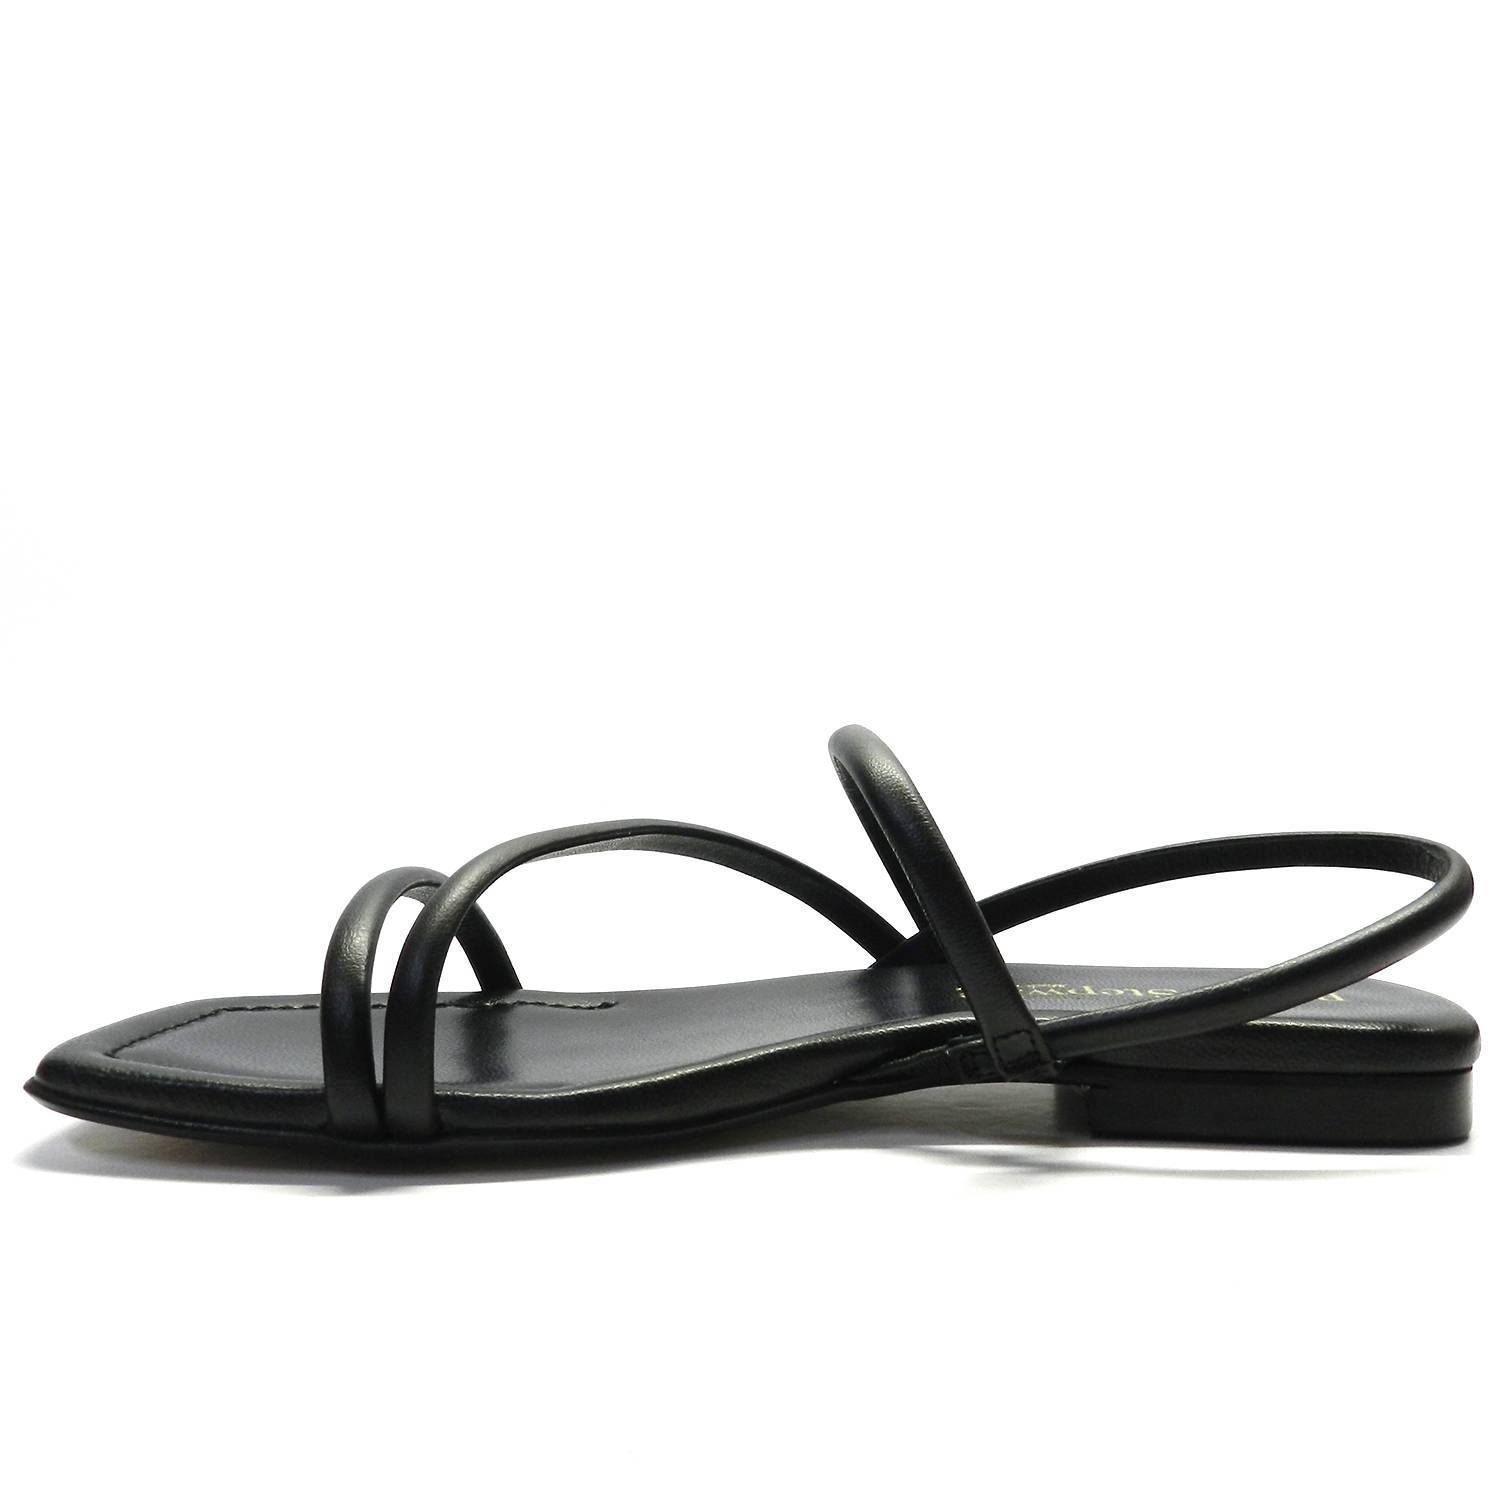 Sandalia de la marca Bryan Stepwise modelo 4606 en color negro. Sandalia plana de piel con finas tiras tubulares y atadas al talón.  Sandalia de punta cuadrada y planta acolchada que proporciona gran comodidad.